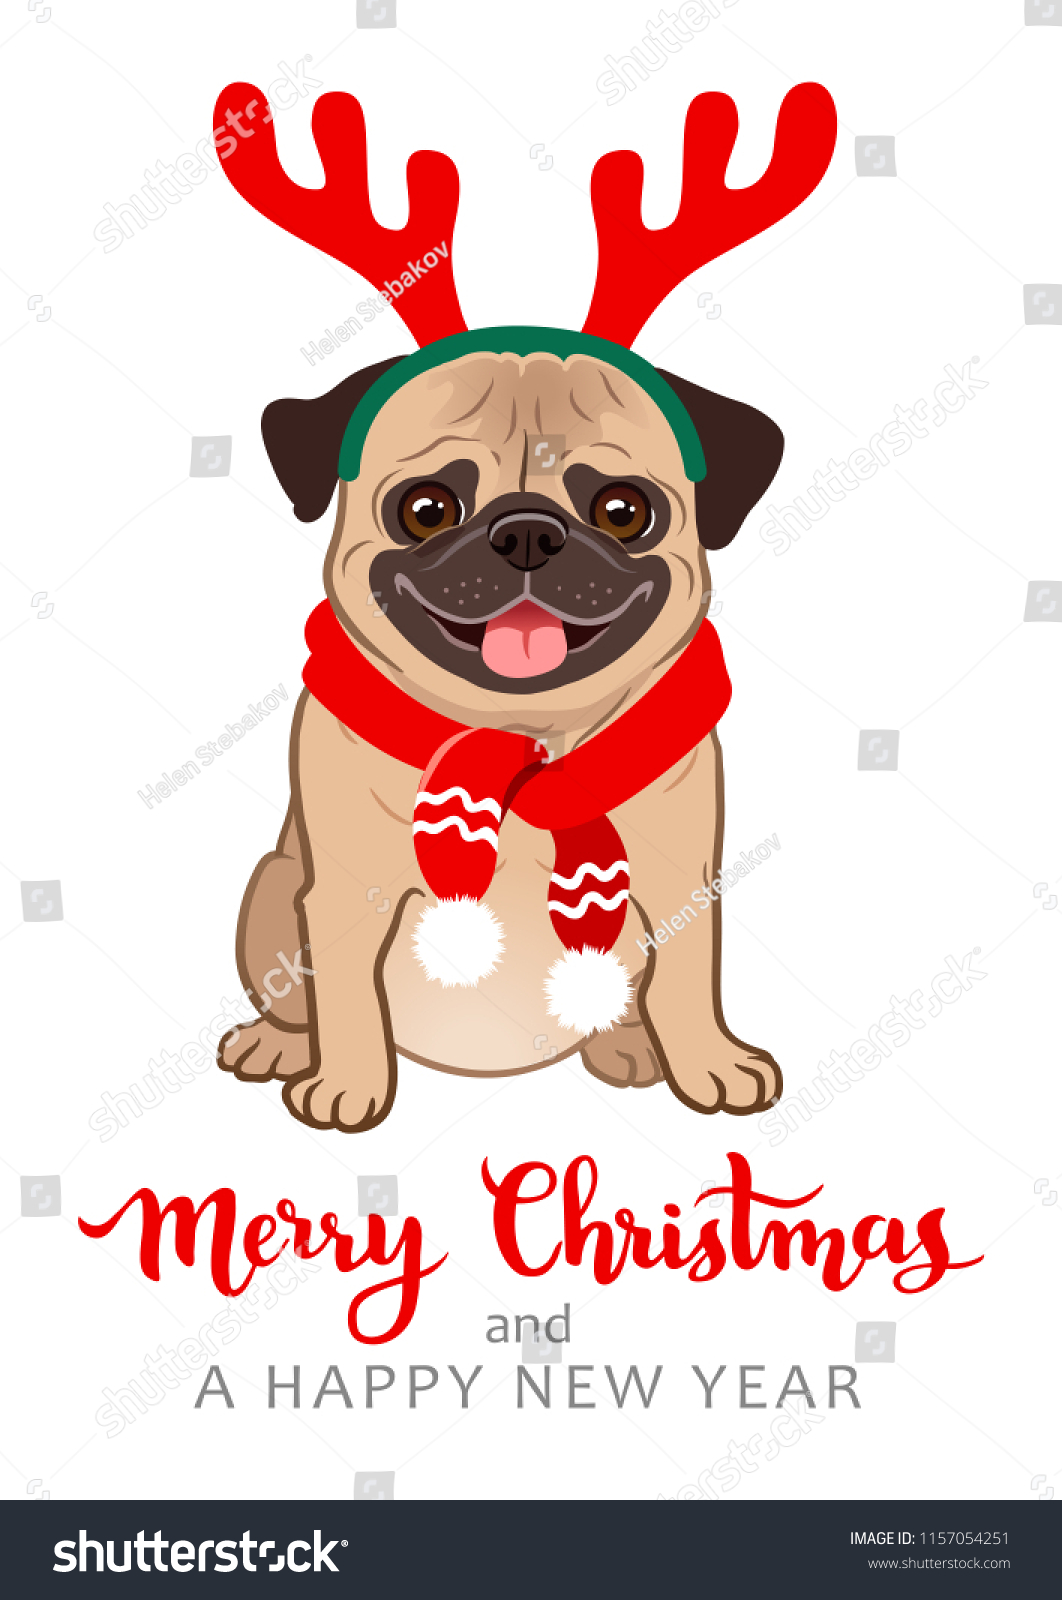 クリスマスパグ犬の漫画のイラスト かわいい人懐こい太った子猫が座っていて 舌を出して微笑み 赤いスカーフと角をつけている ペット 犬好き 動物をテーマにしたクリスマスグリーティングカード のベクター画像素材 ロイヤリティフリー